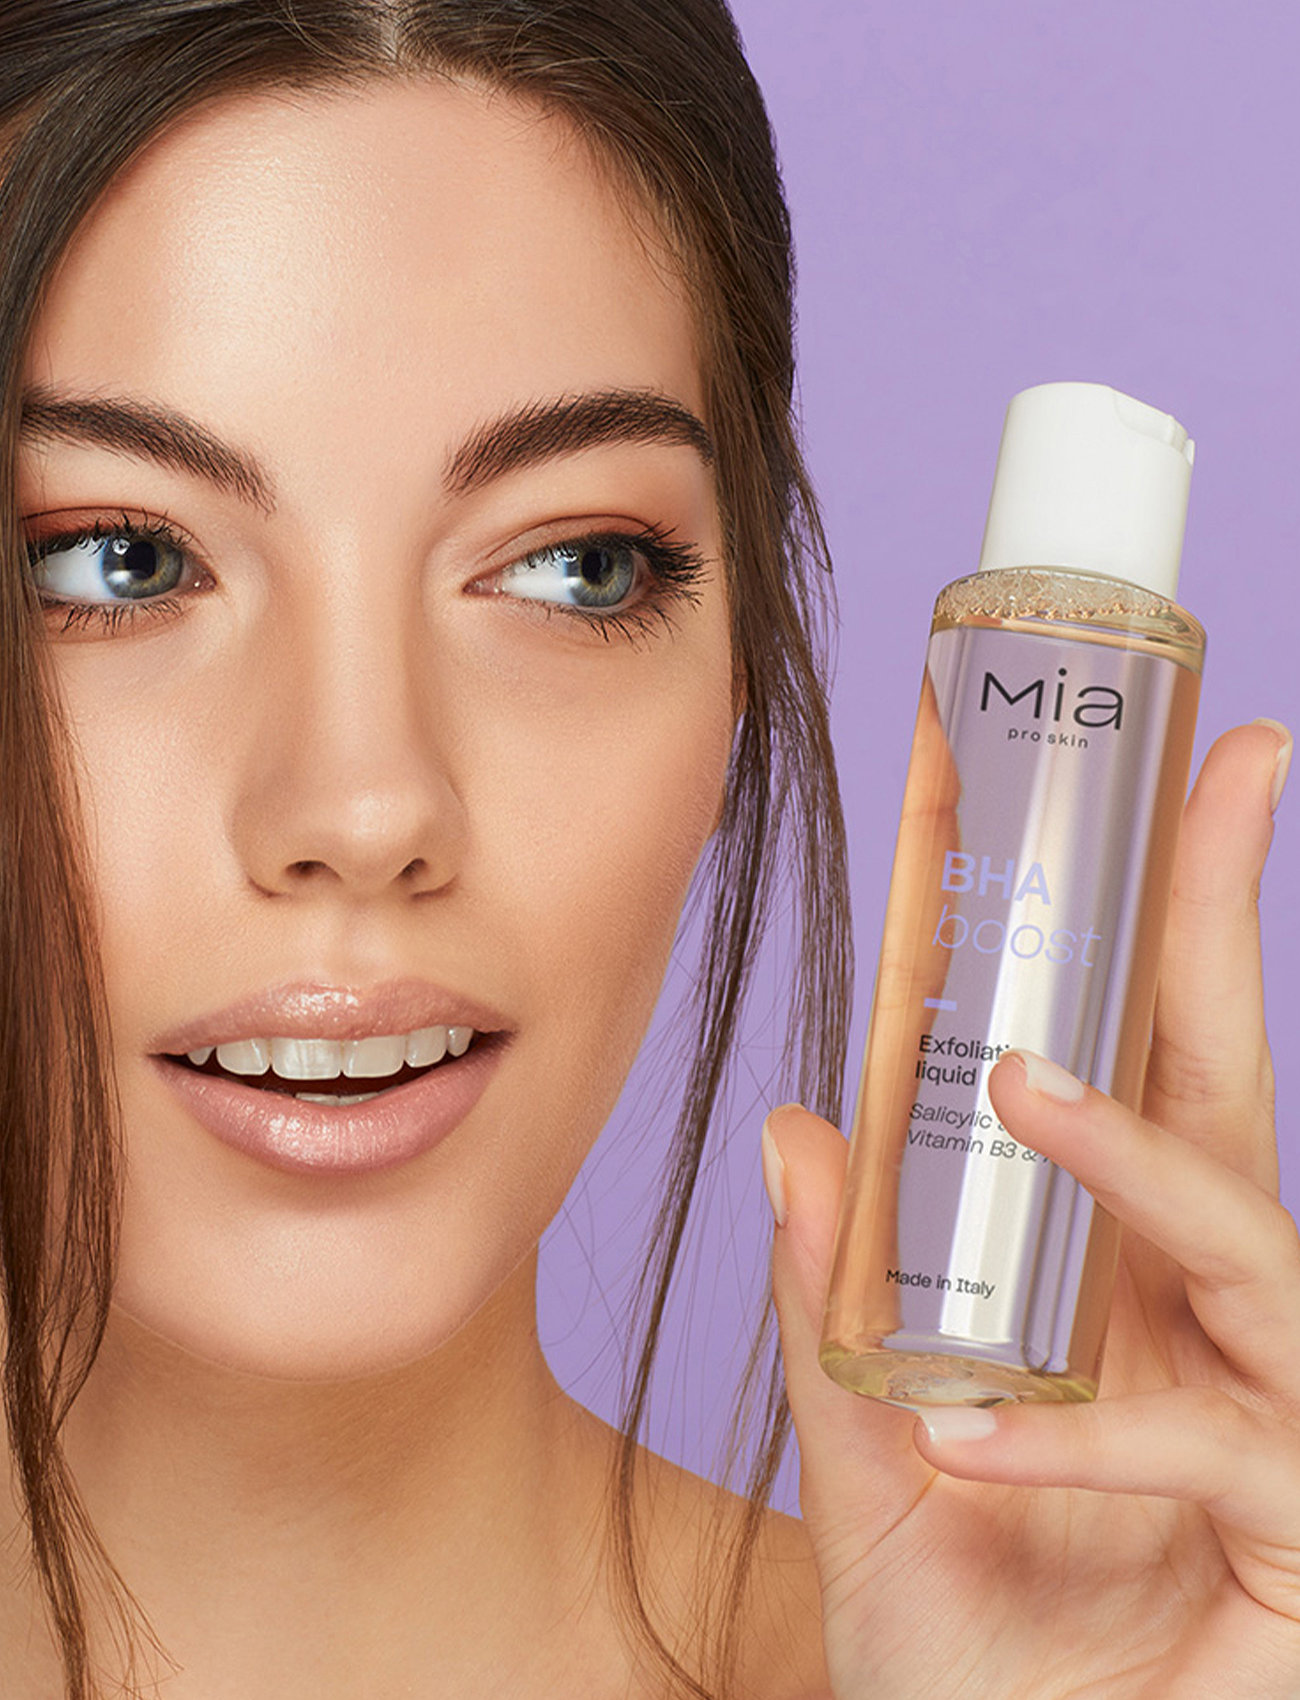 Mia Makeup - Mia Pro skin - BHA BOOST Exfoliating Liquid - laveste priser - natural - 1